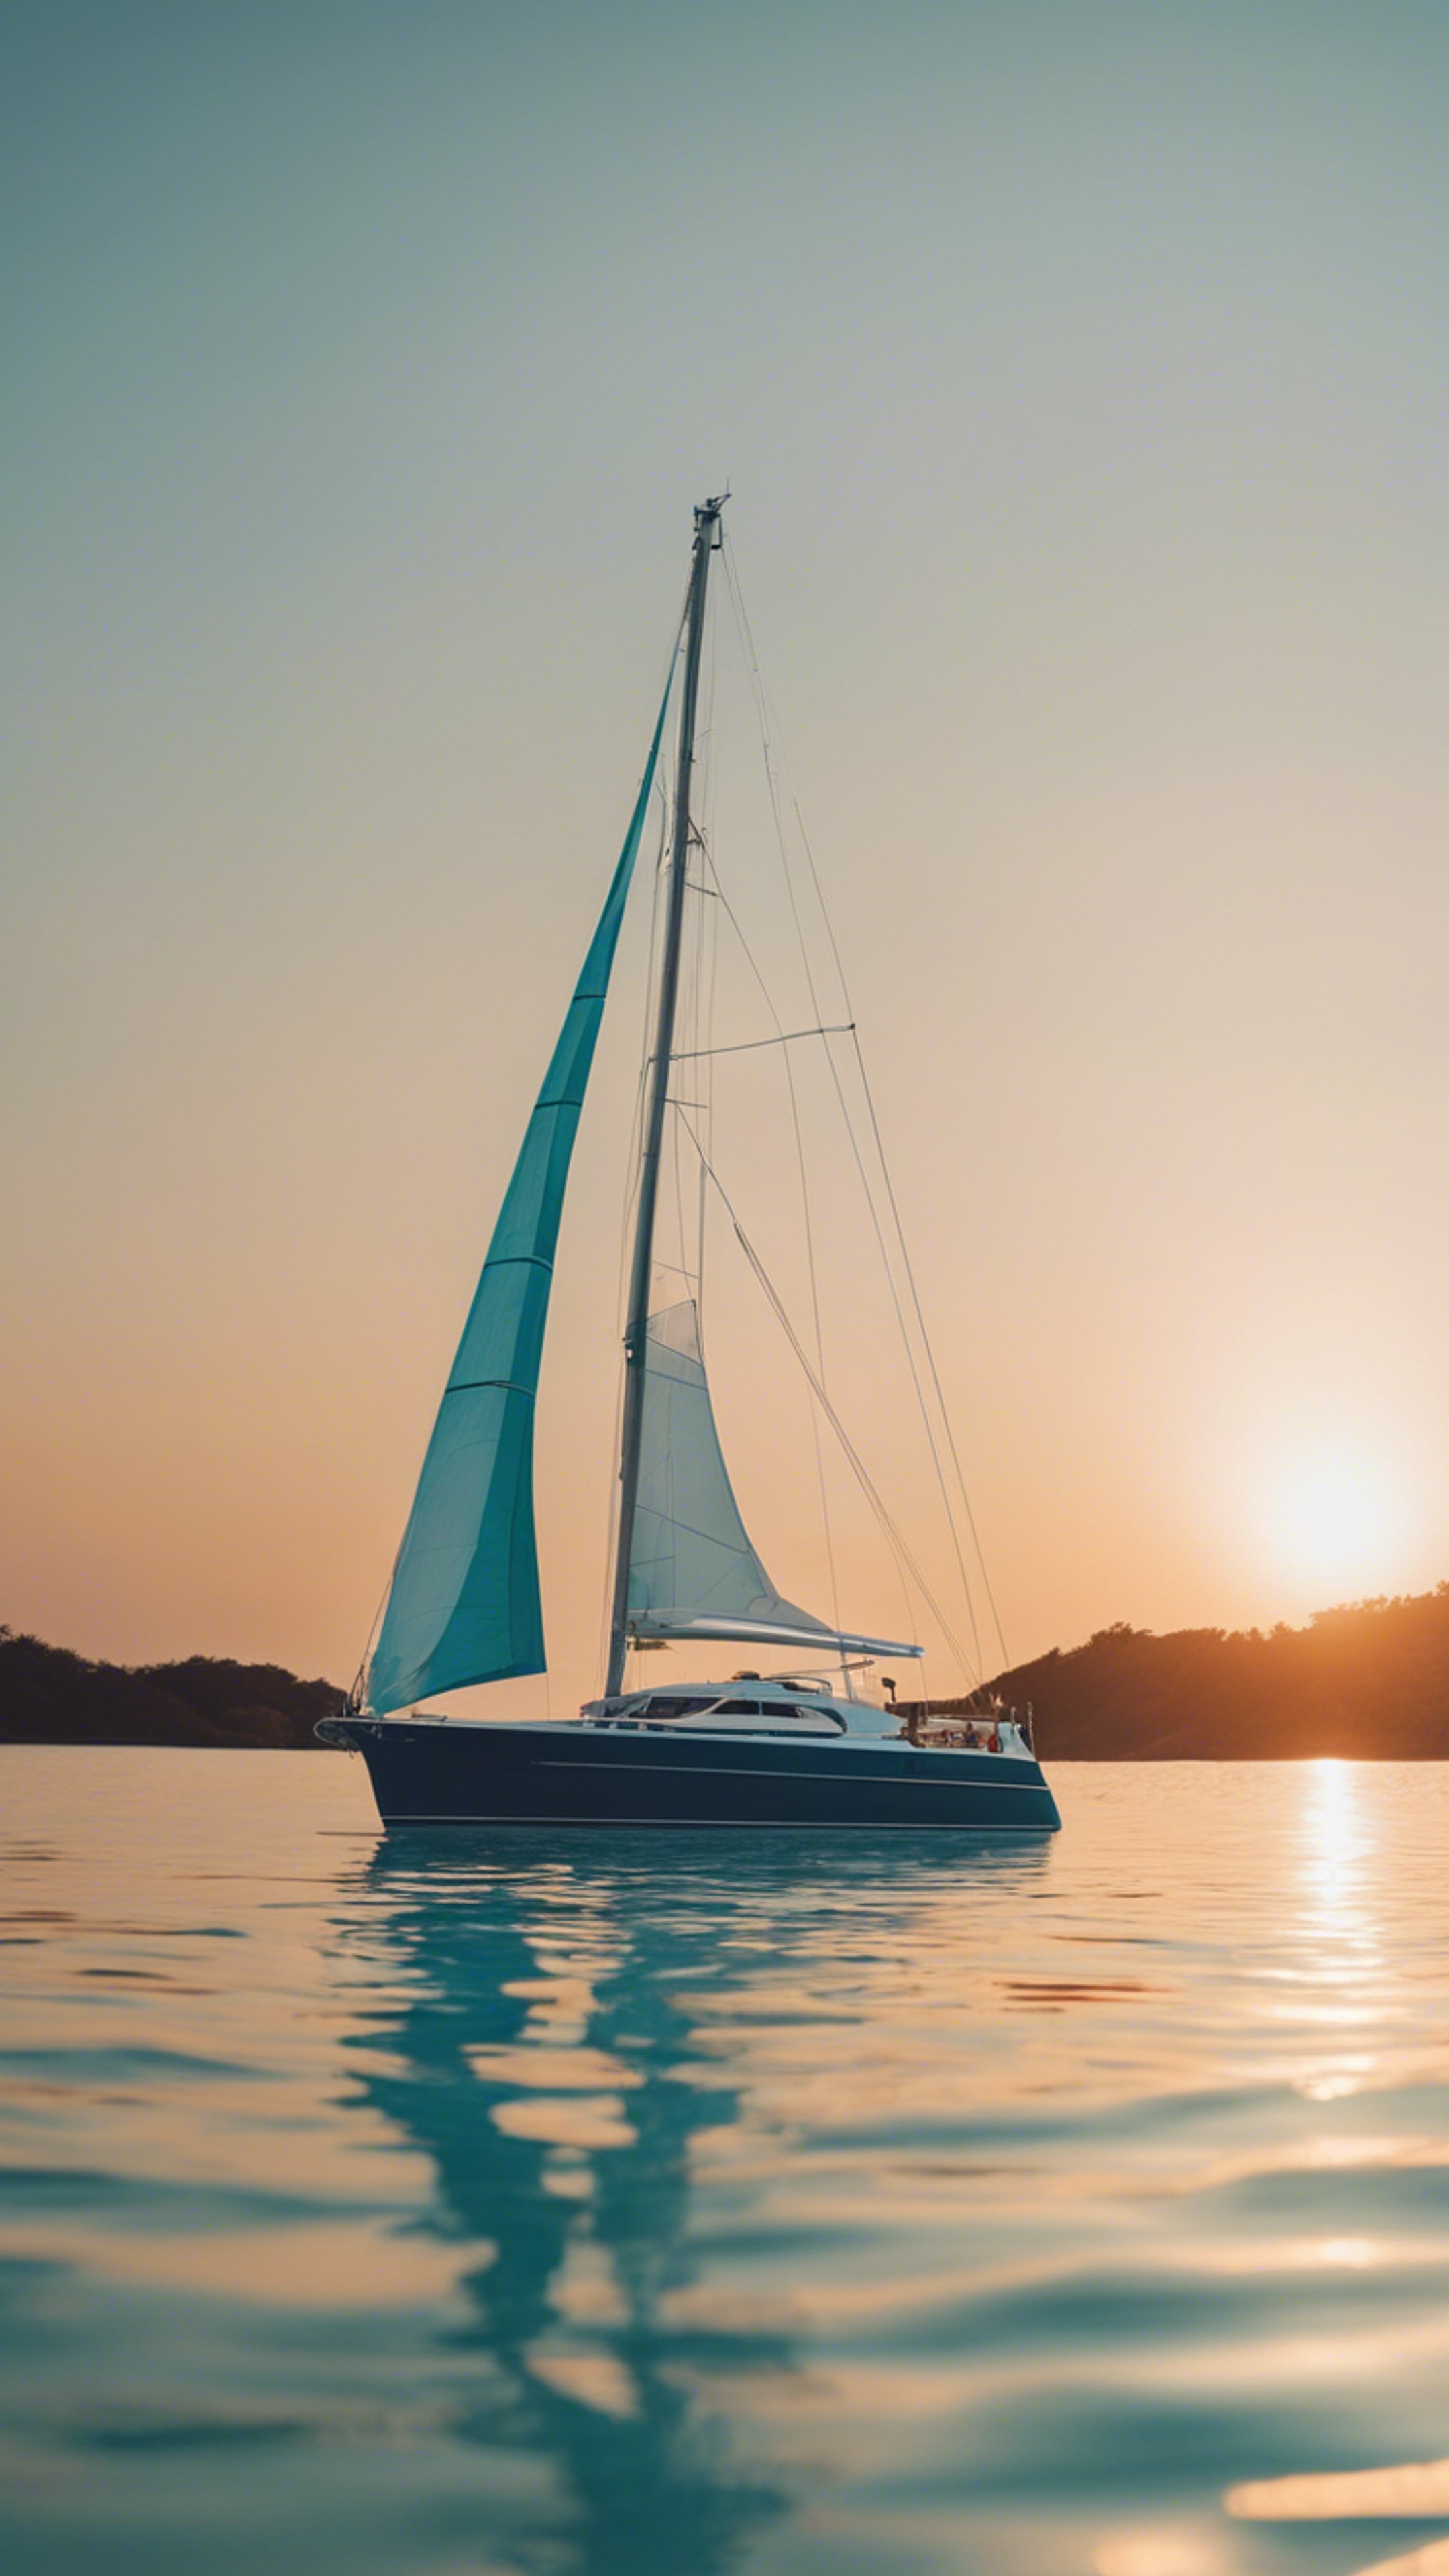 A preppy blue yacht sailing calmly on clear aquamarine waters at sunset. duvar kağıdı[1bfcce9f38c64176b950]